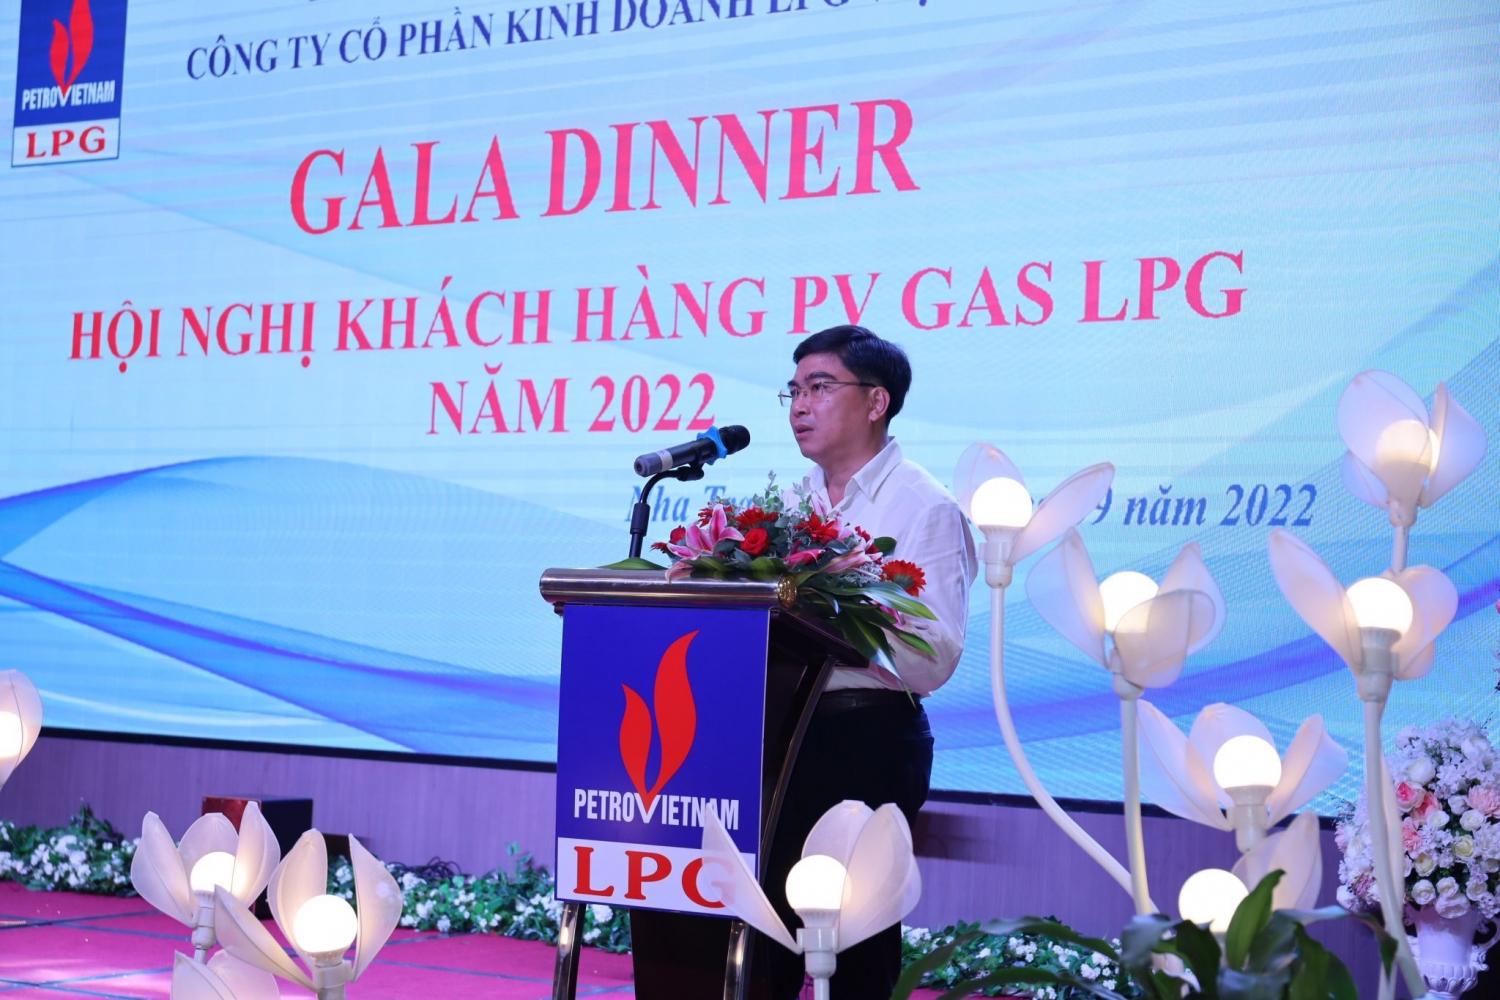 Ông Lê Trọng Khang – Giám đốc Công ty cổ phần Dầu khí Ngọc Trai Phú Quốc chia sẻ và cam kết đồng hành cùng PV GAS LPG tại hội nghị